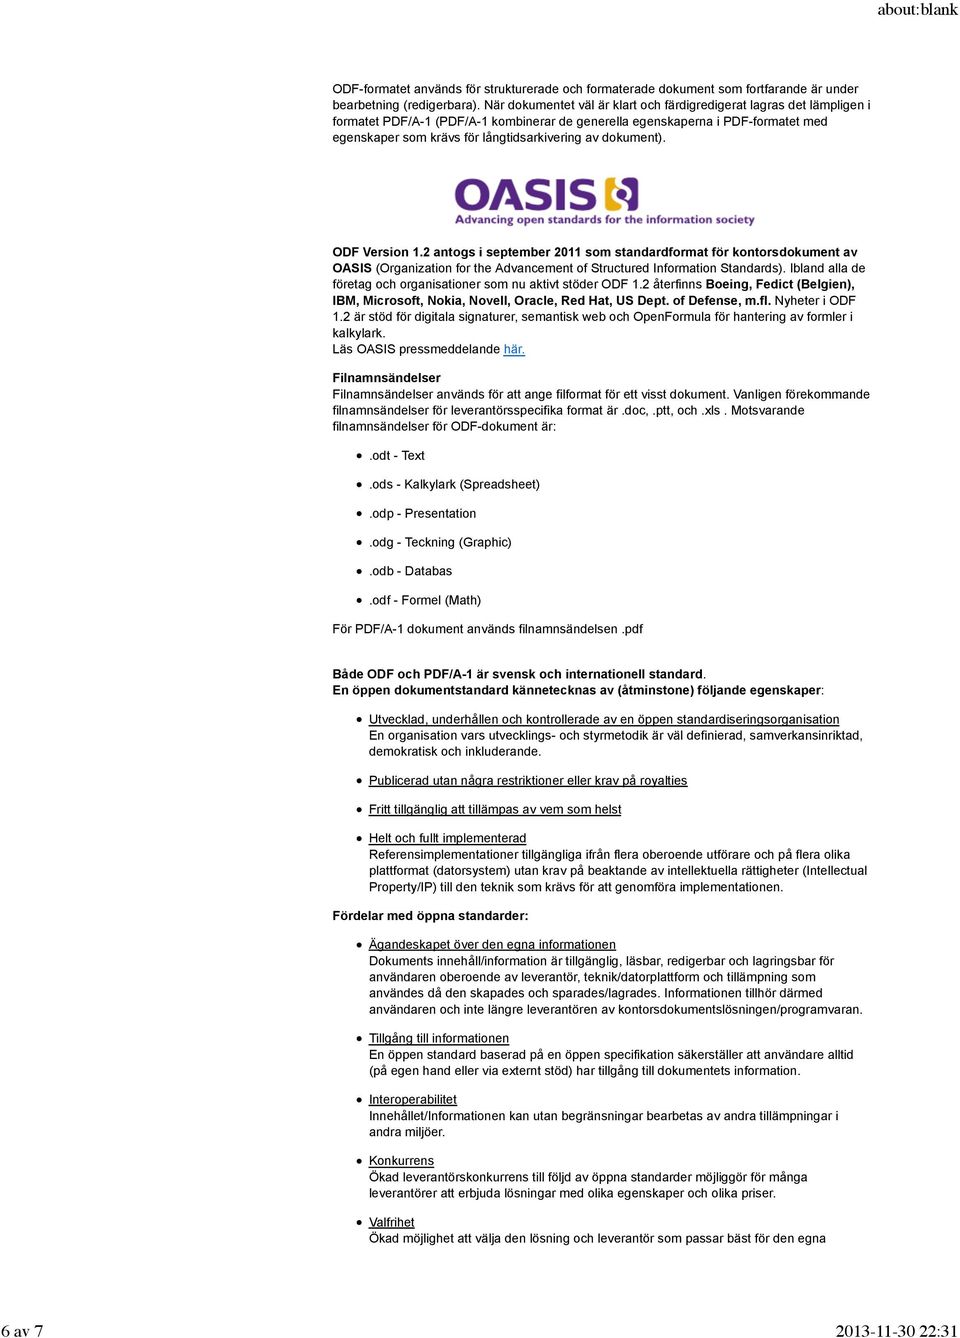 dokument). ODF Version 1.2 antogs i september 2011 som standardformat för kontorsdokument av OASIS (Organization for the Advancement of Structured Information Standards).